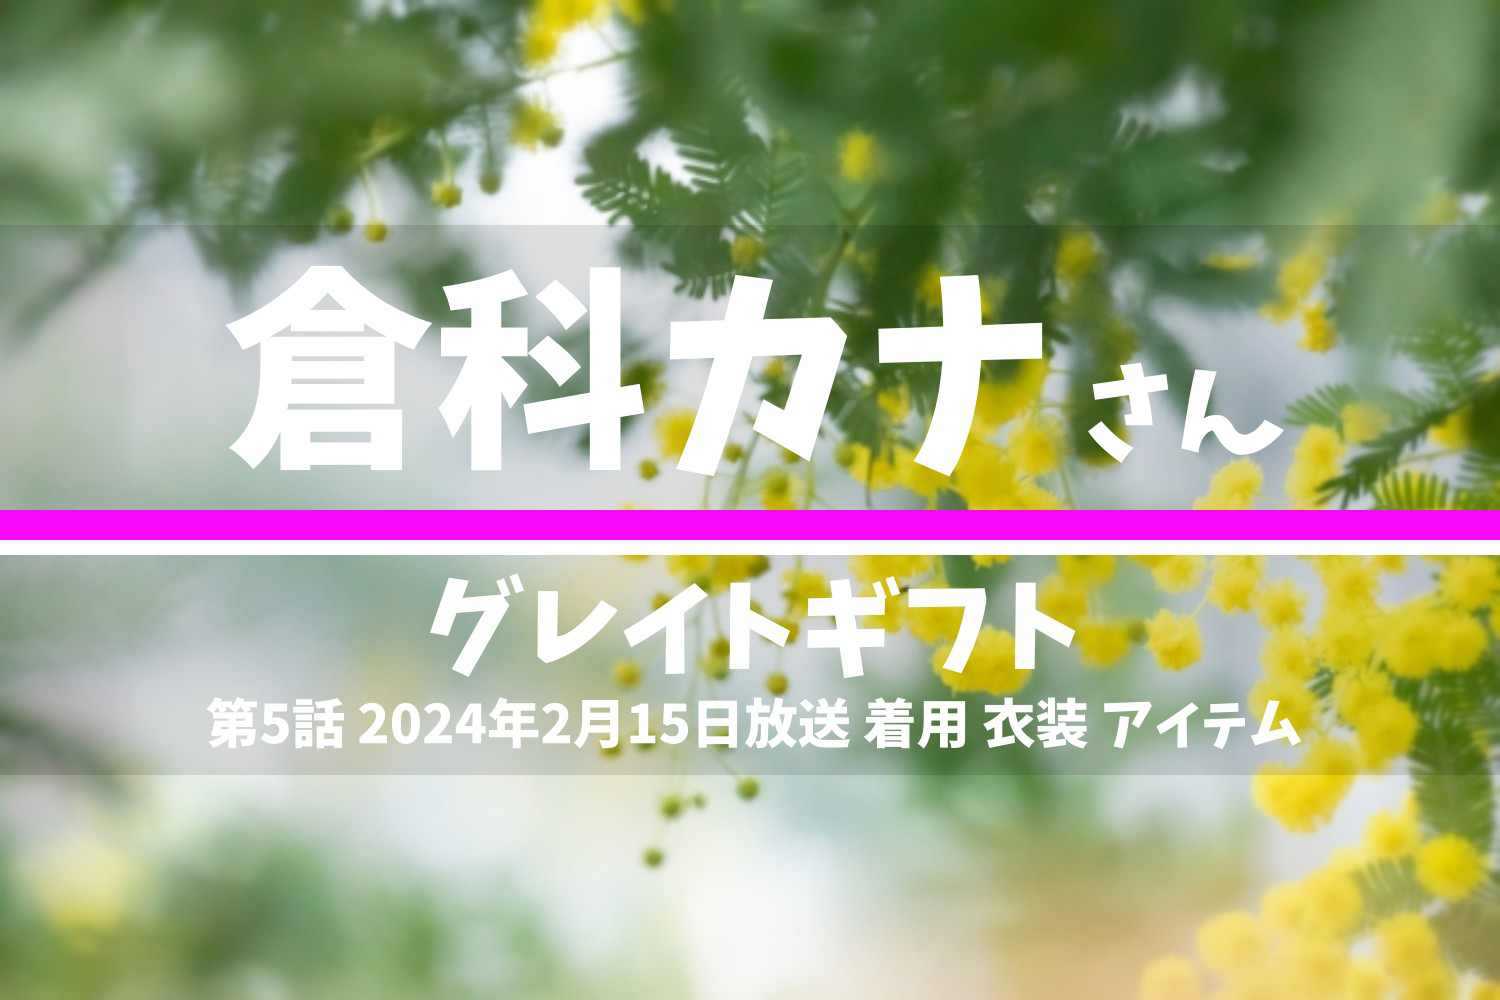 グレイトギフト 倉科カナさん テレビドラマ 衣装 2024年2月15日放送